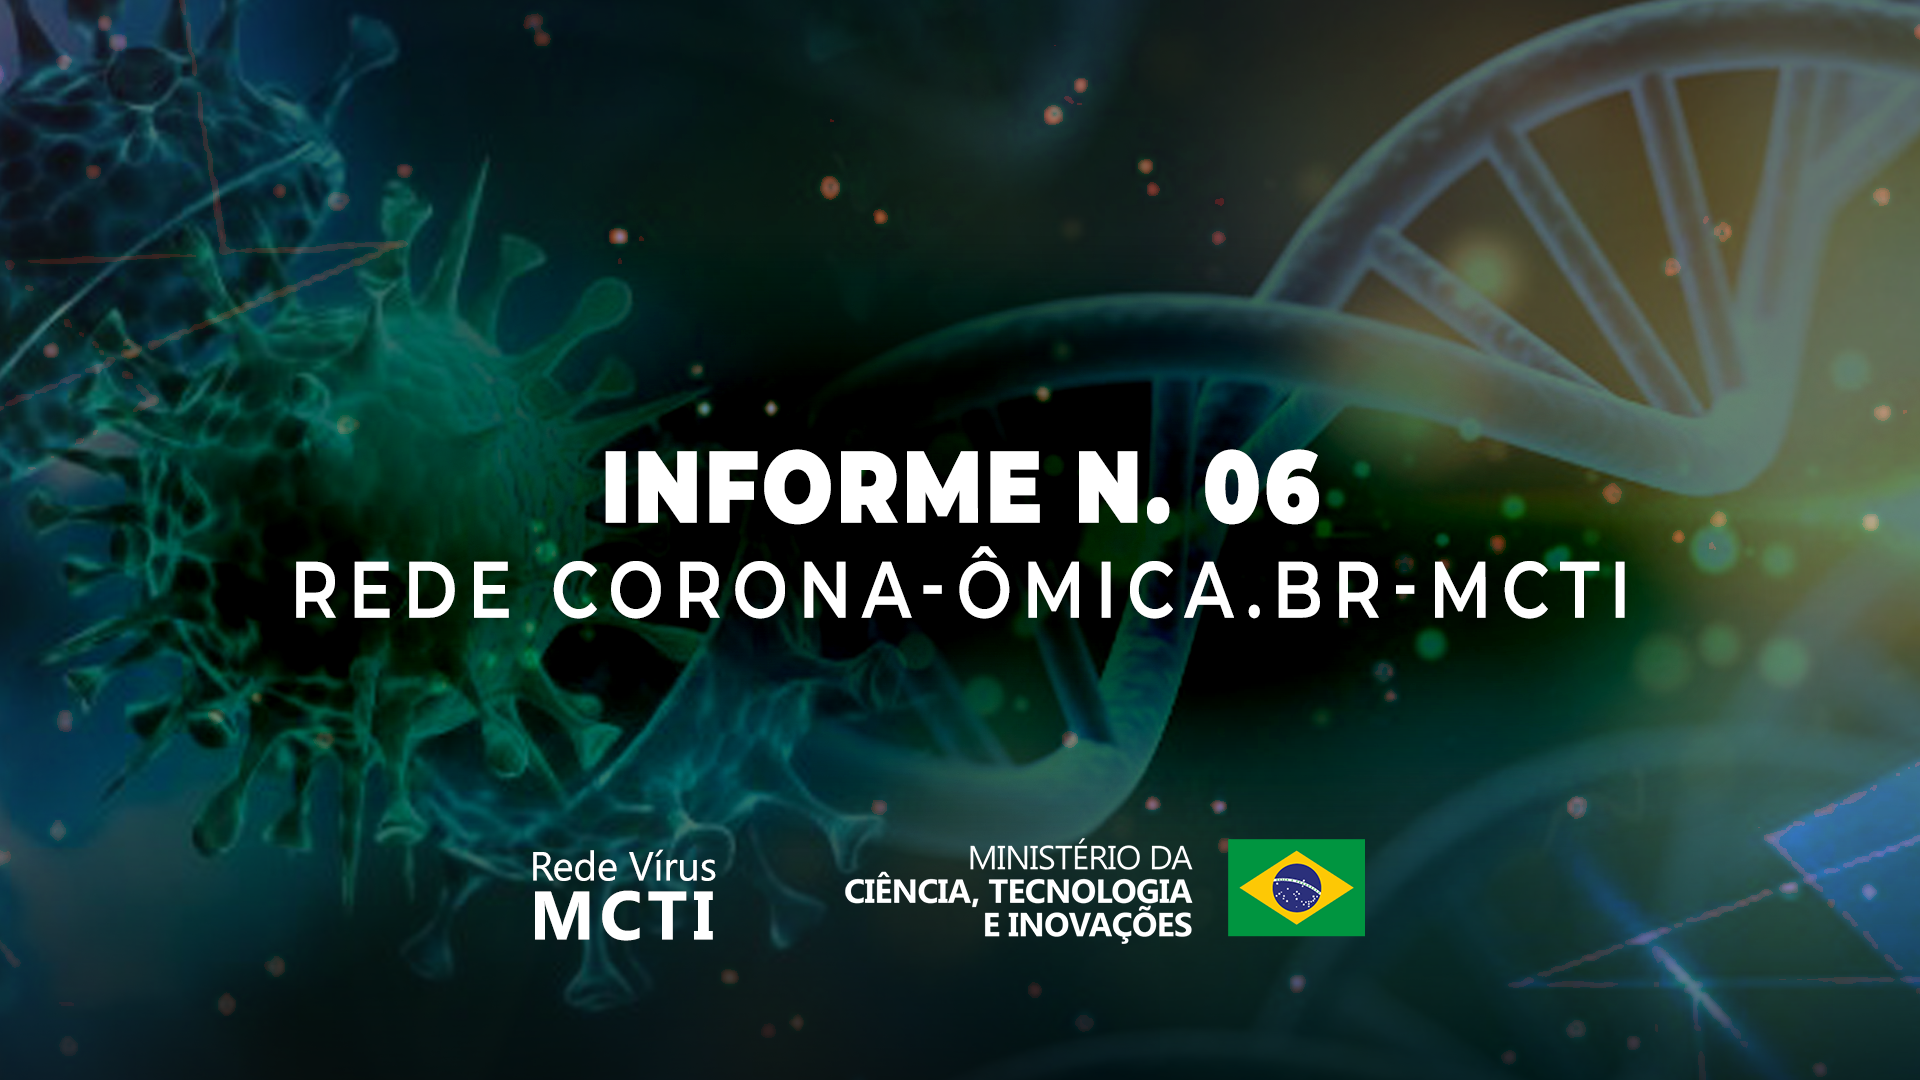 Rede Corona-ÔmicaBR-MCTI, identifica 16 amostras de SARS-CoV-2 pertencentes à variante viral brasileira P.2 (B.1.1.28.2) em Belo Horizonte